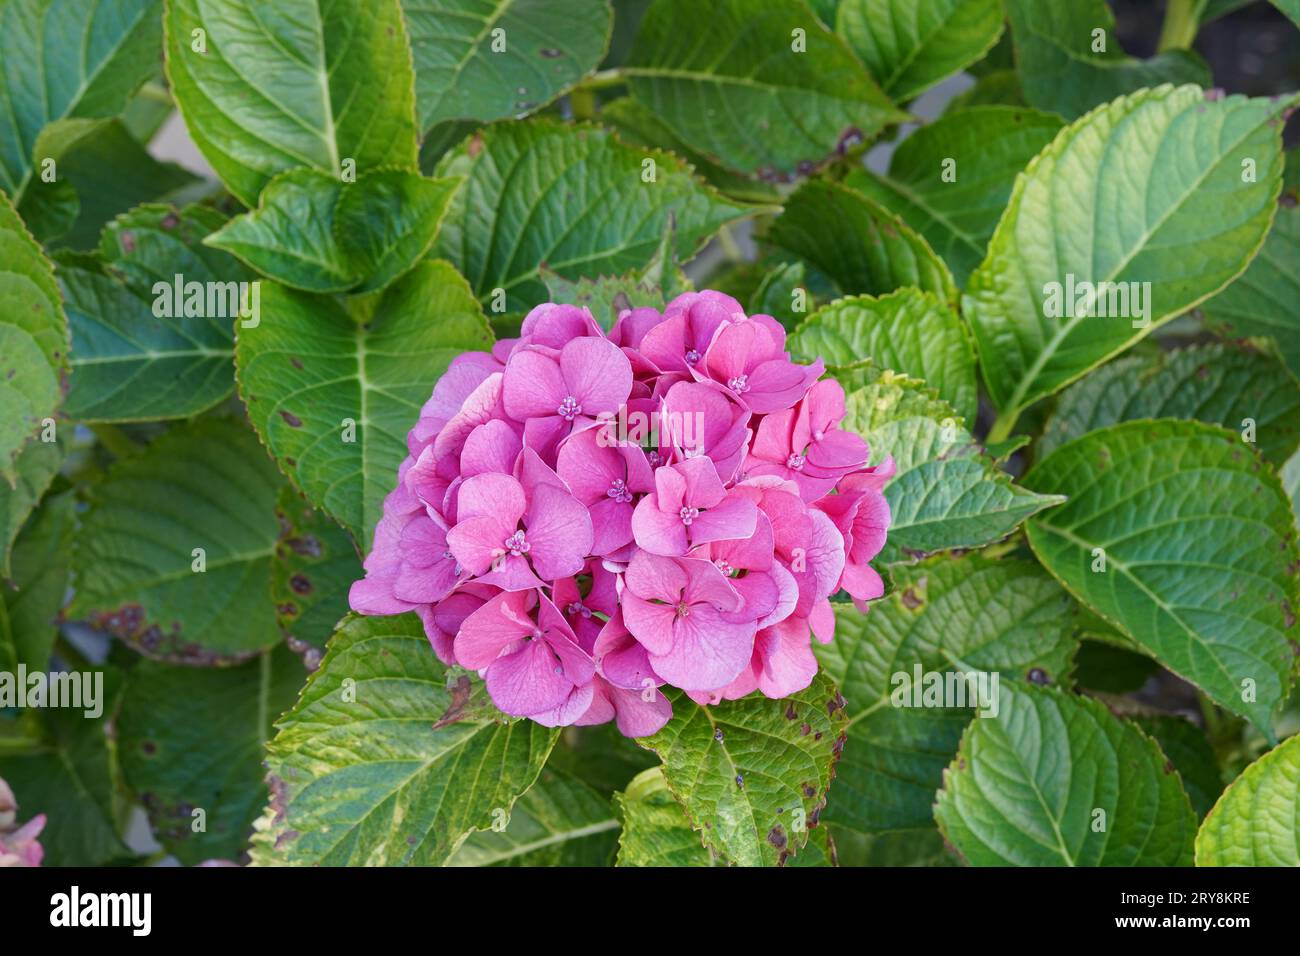 Hydrangea o comunemente chiamata Hortensia con fiori rosa scuro. Foto Stock